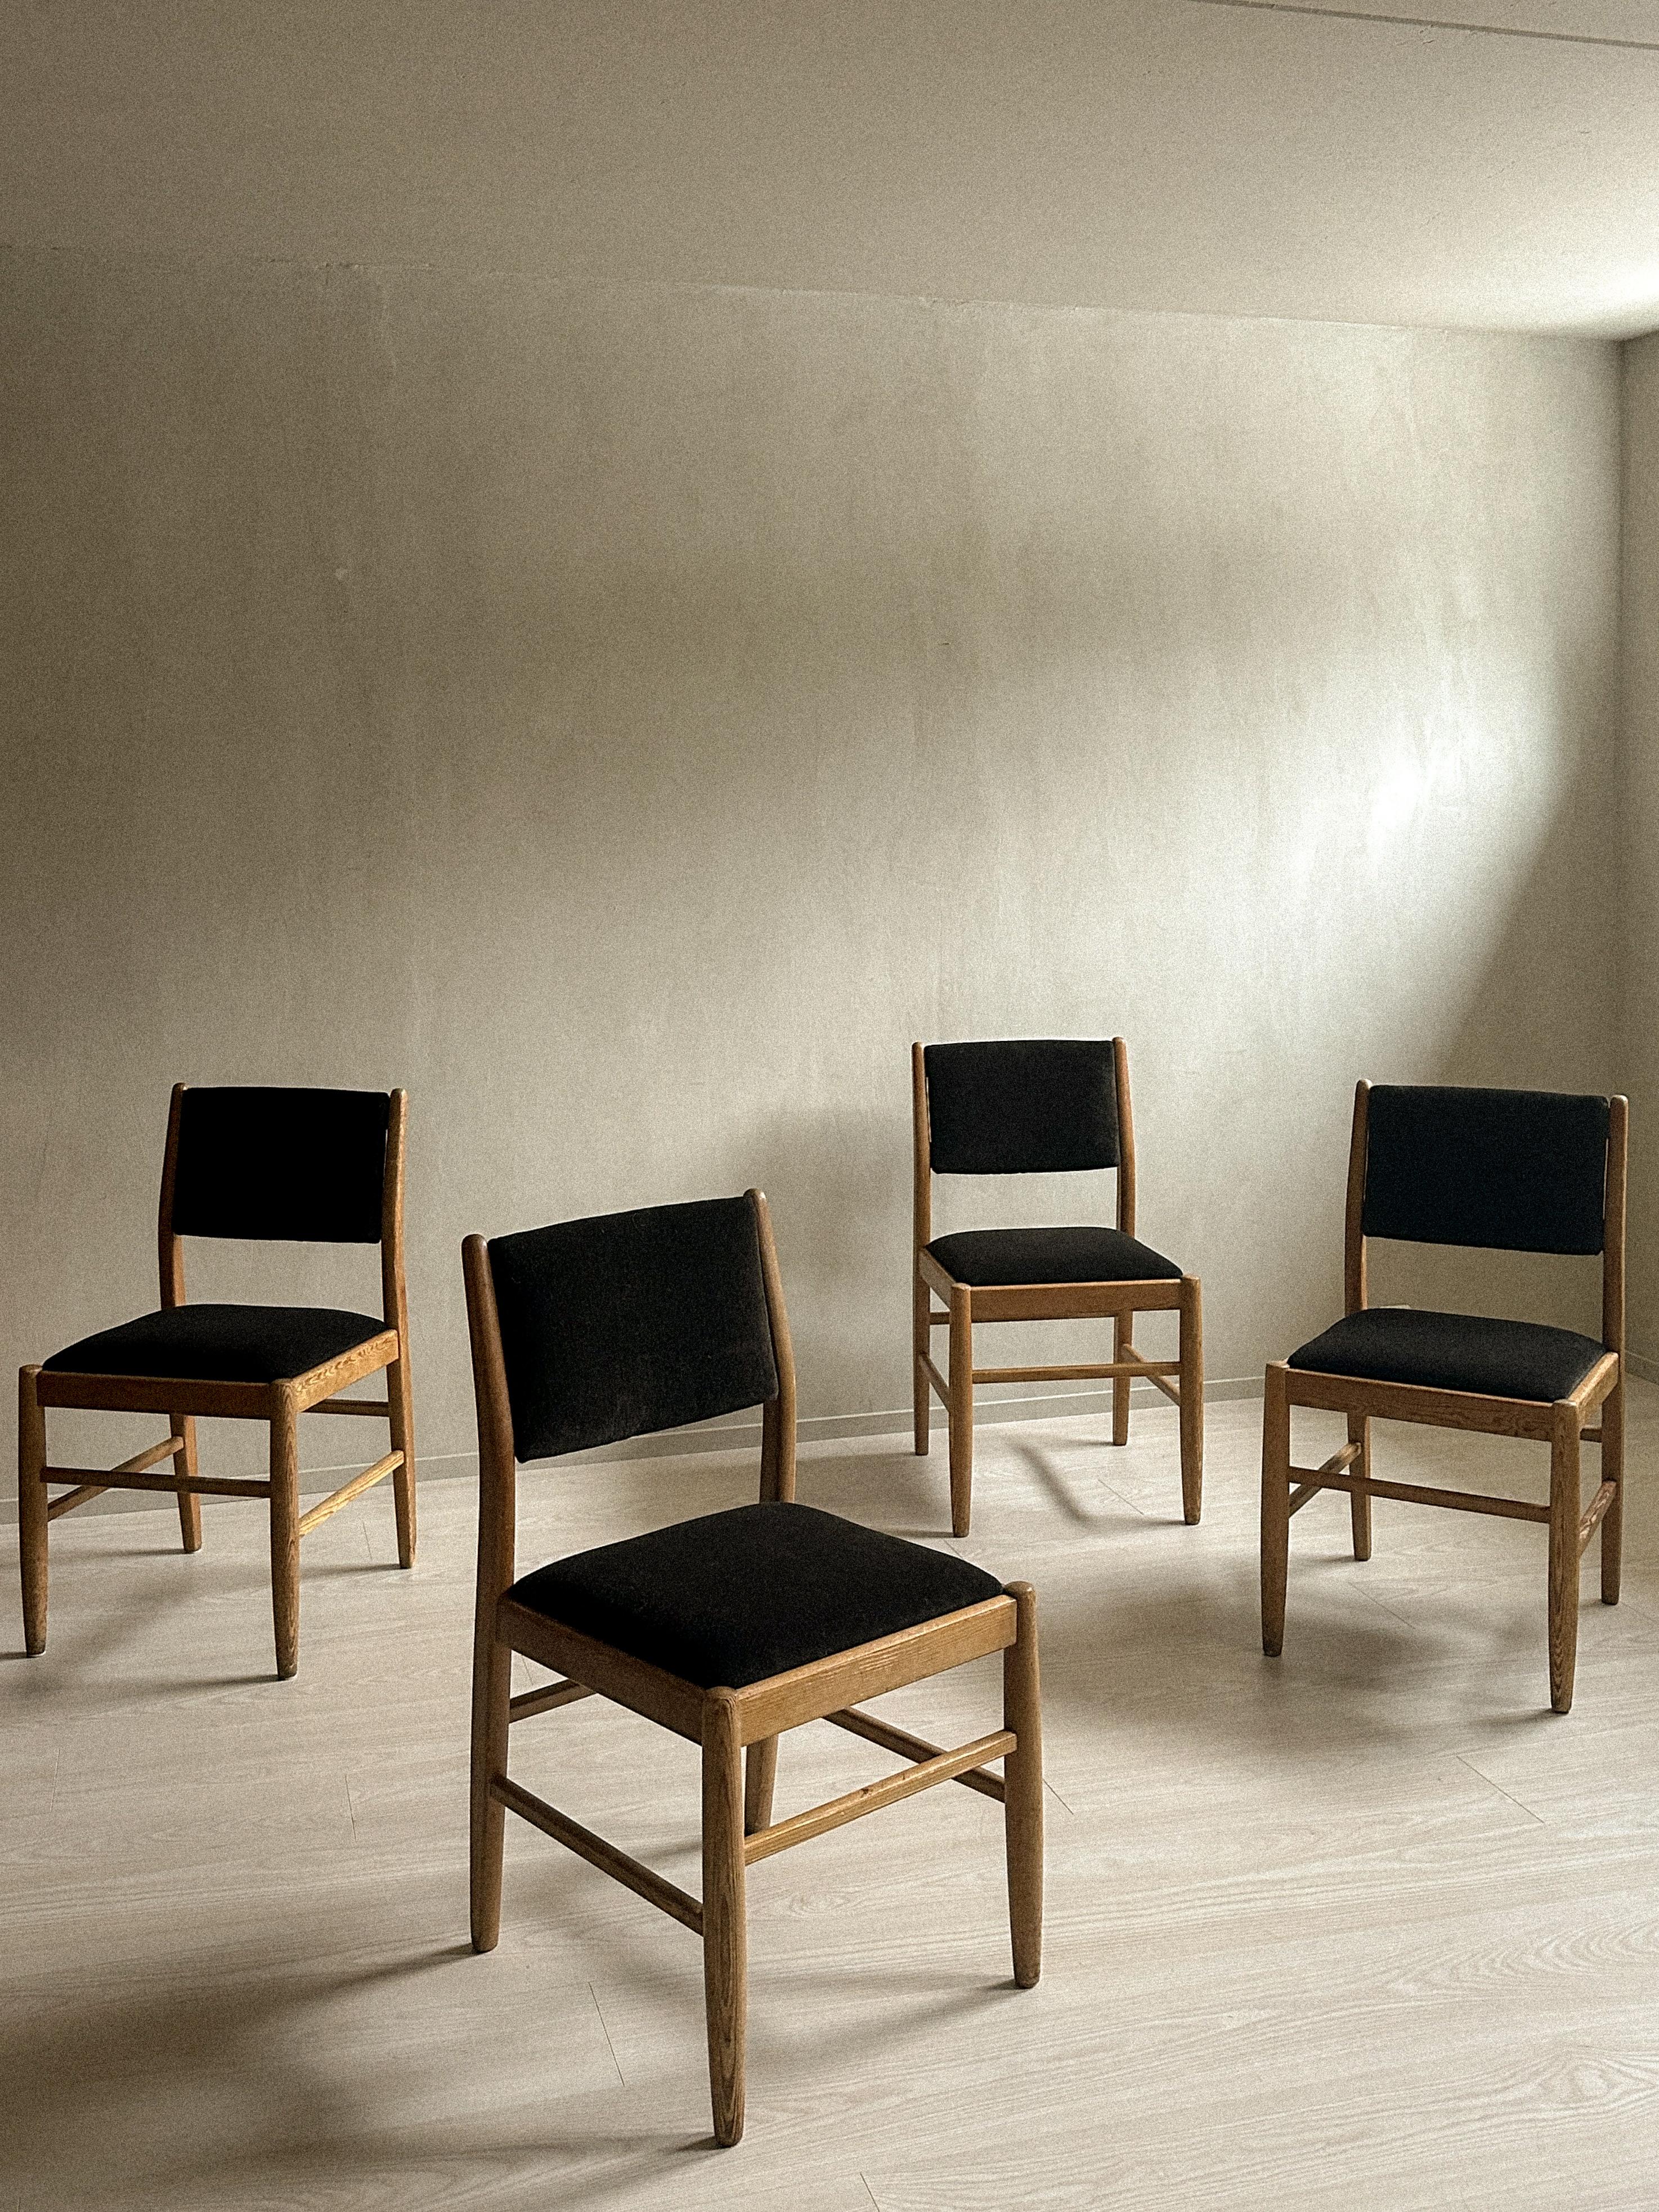 Magnifique ensemble de 4 chaises de salle à manger des designers norvégiens Torbjørn Afdal et Harry Moen. Fabriquées en Norvège dans les années 1960, ces chaises ont été retapissées dans un velours brun foncé. Le bois est conservé dans son état